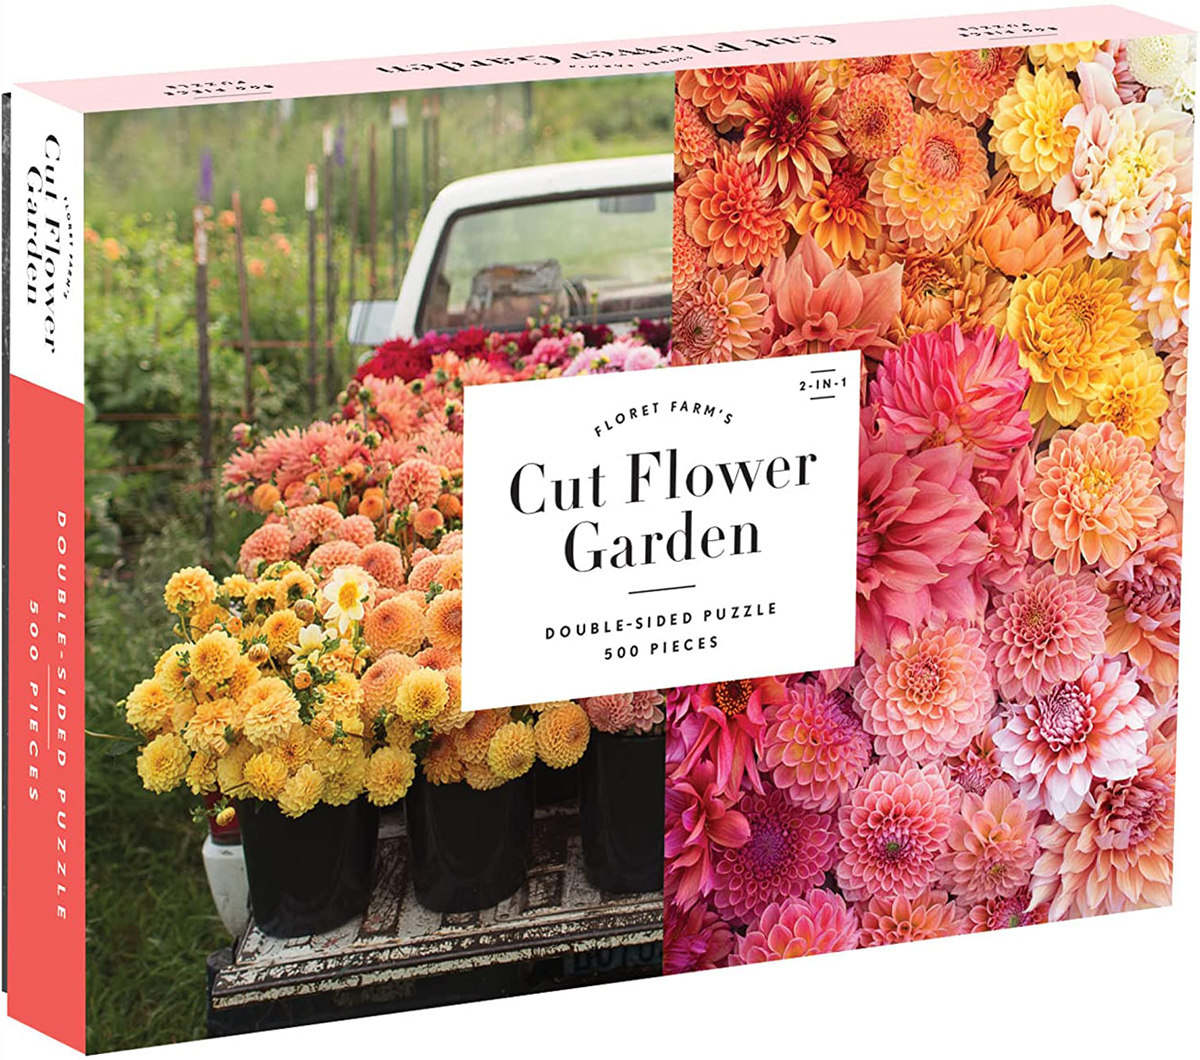 Floret Farm's Cut Flower Garden Flower & Garden Jigsaw Puzzle